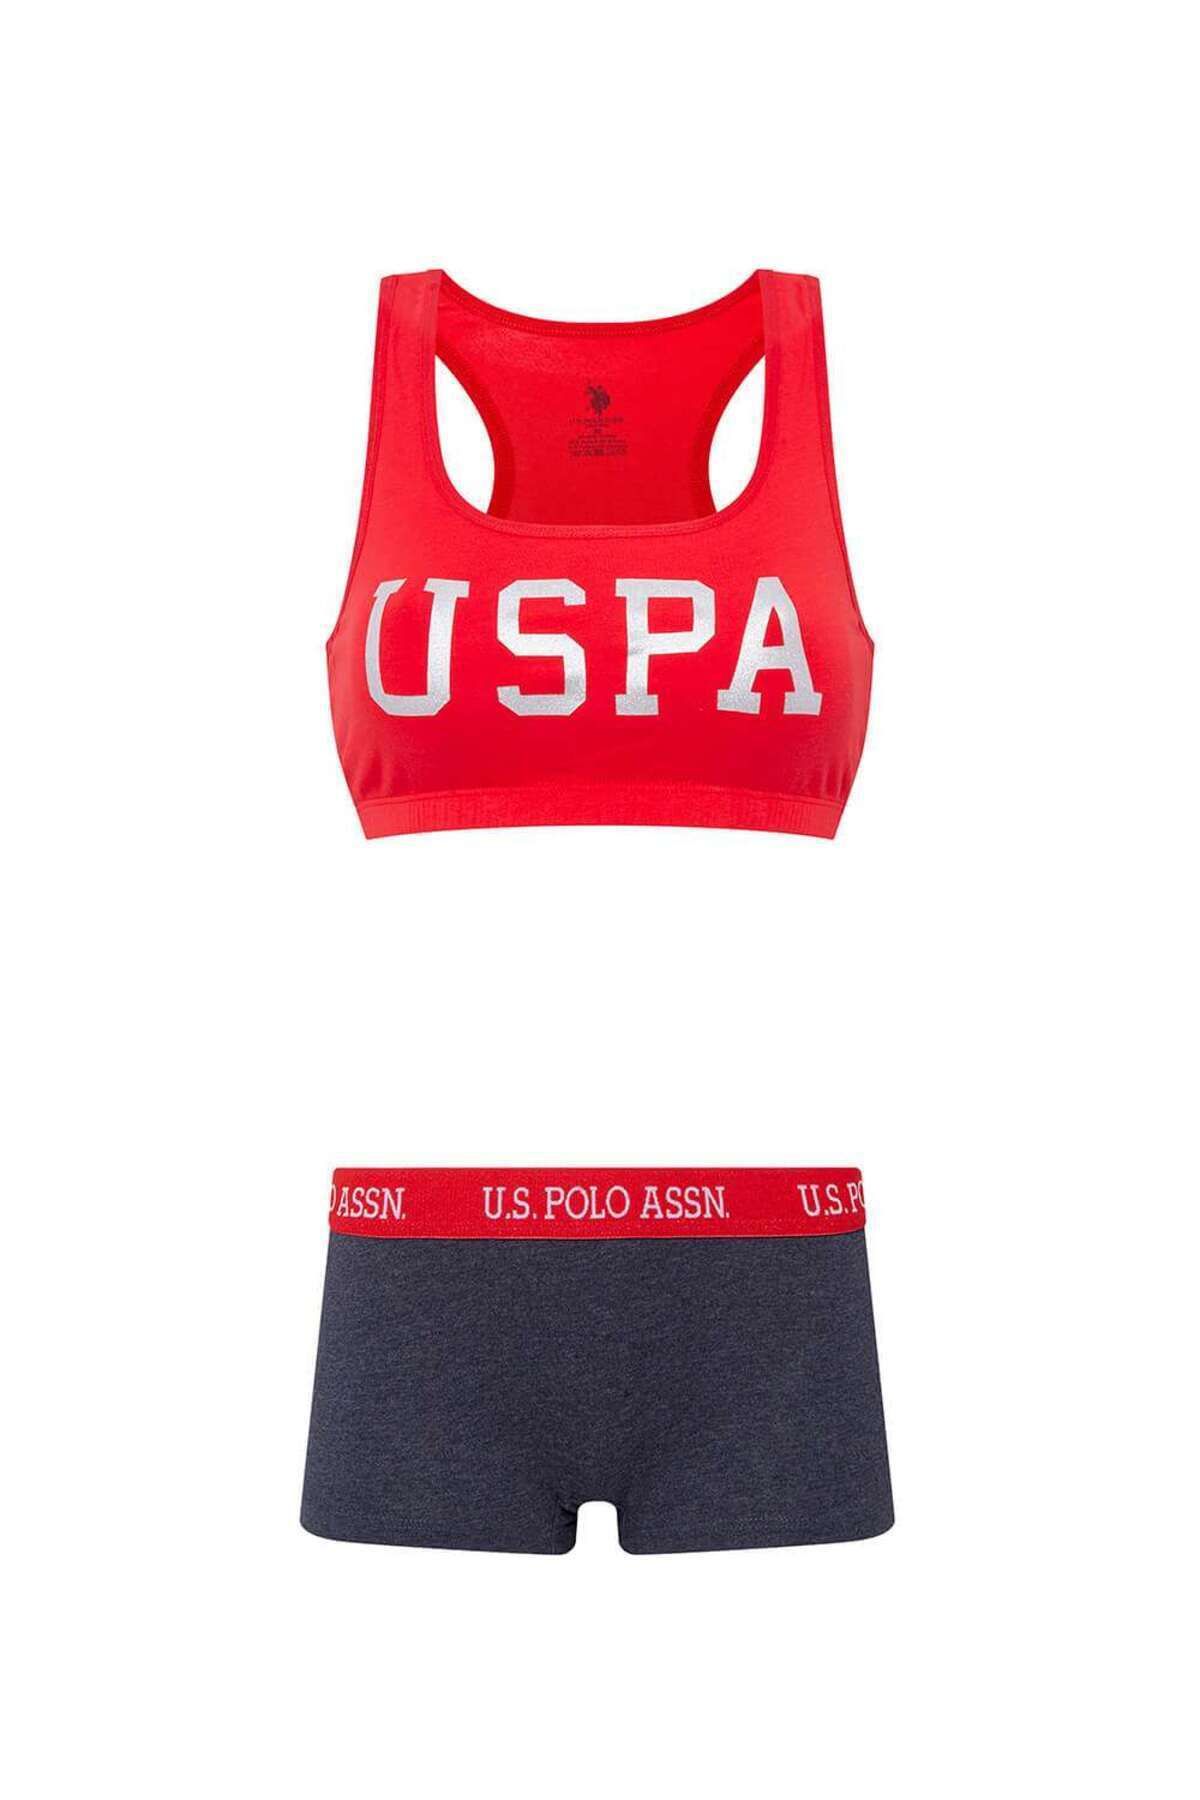 U.S. Polo Assn. Underwear Set - Red - Graphic - Trendyol